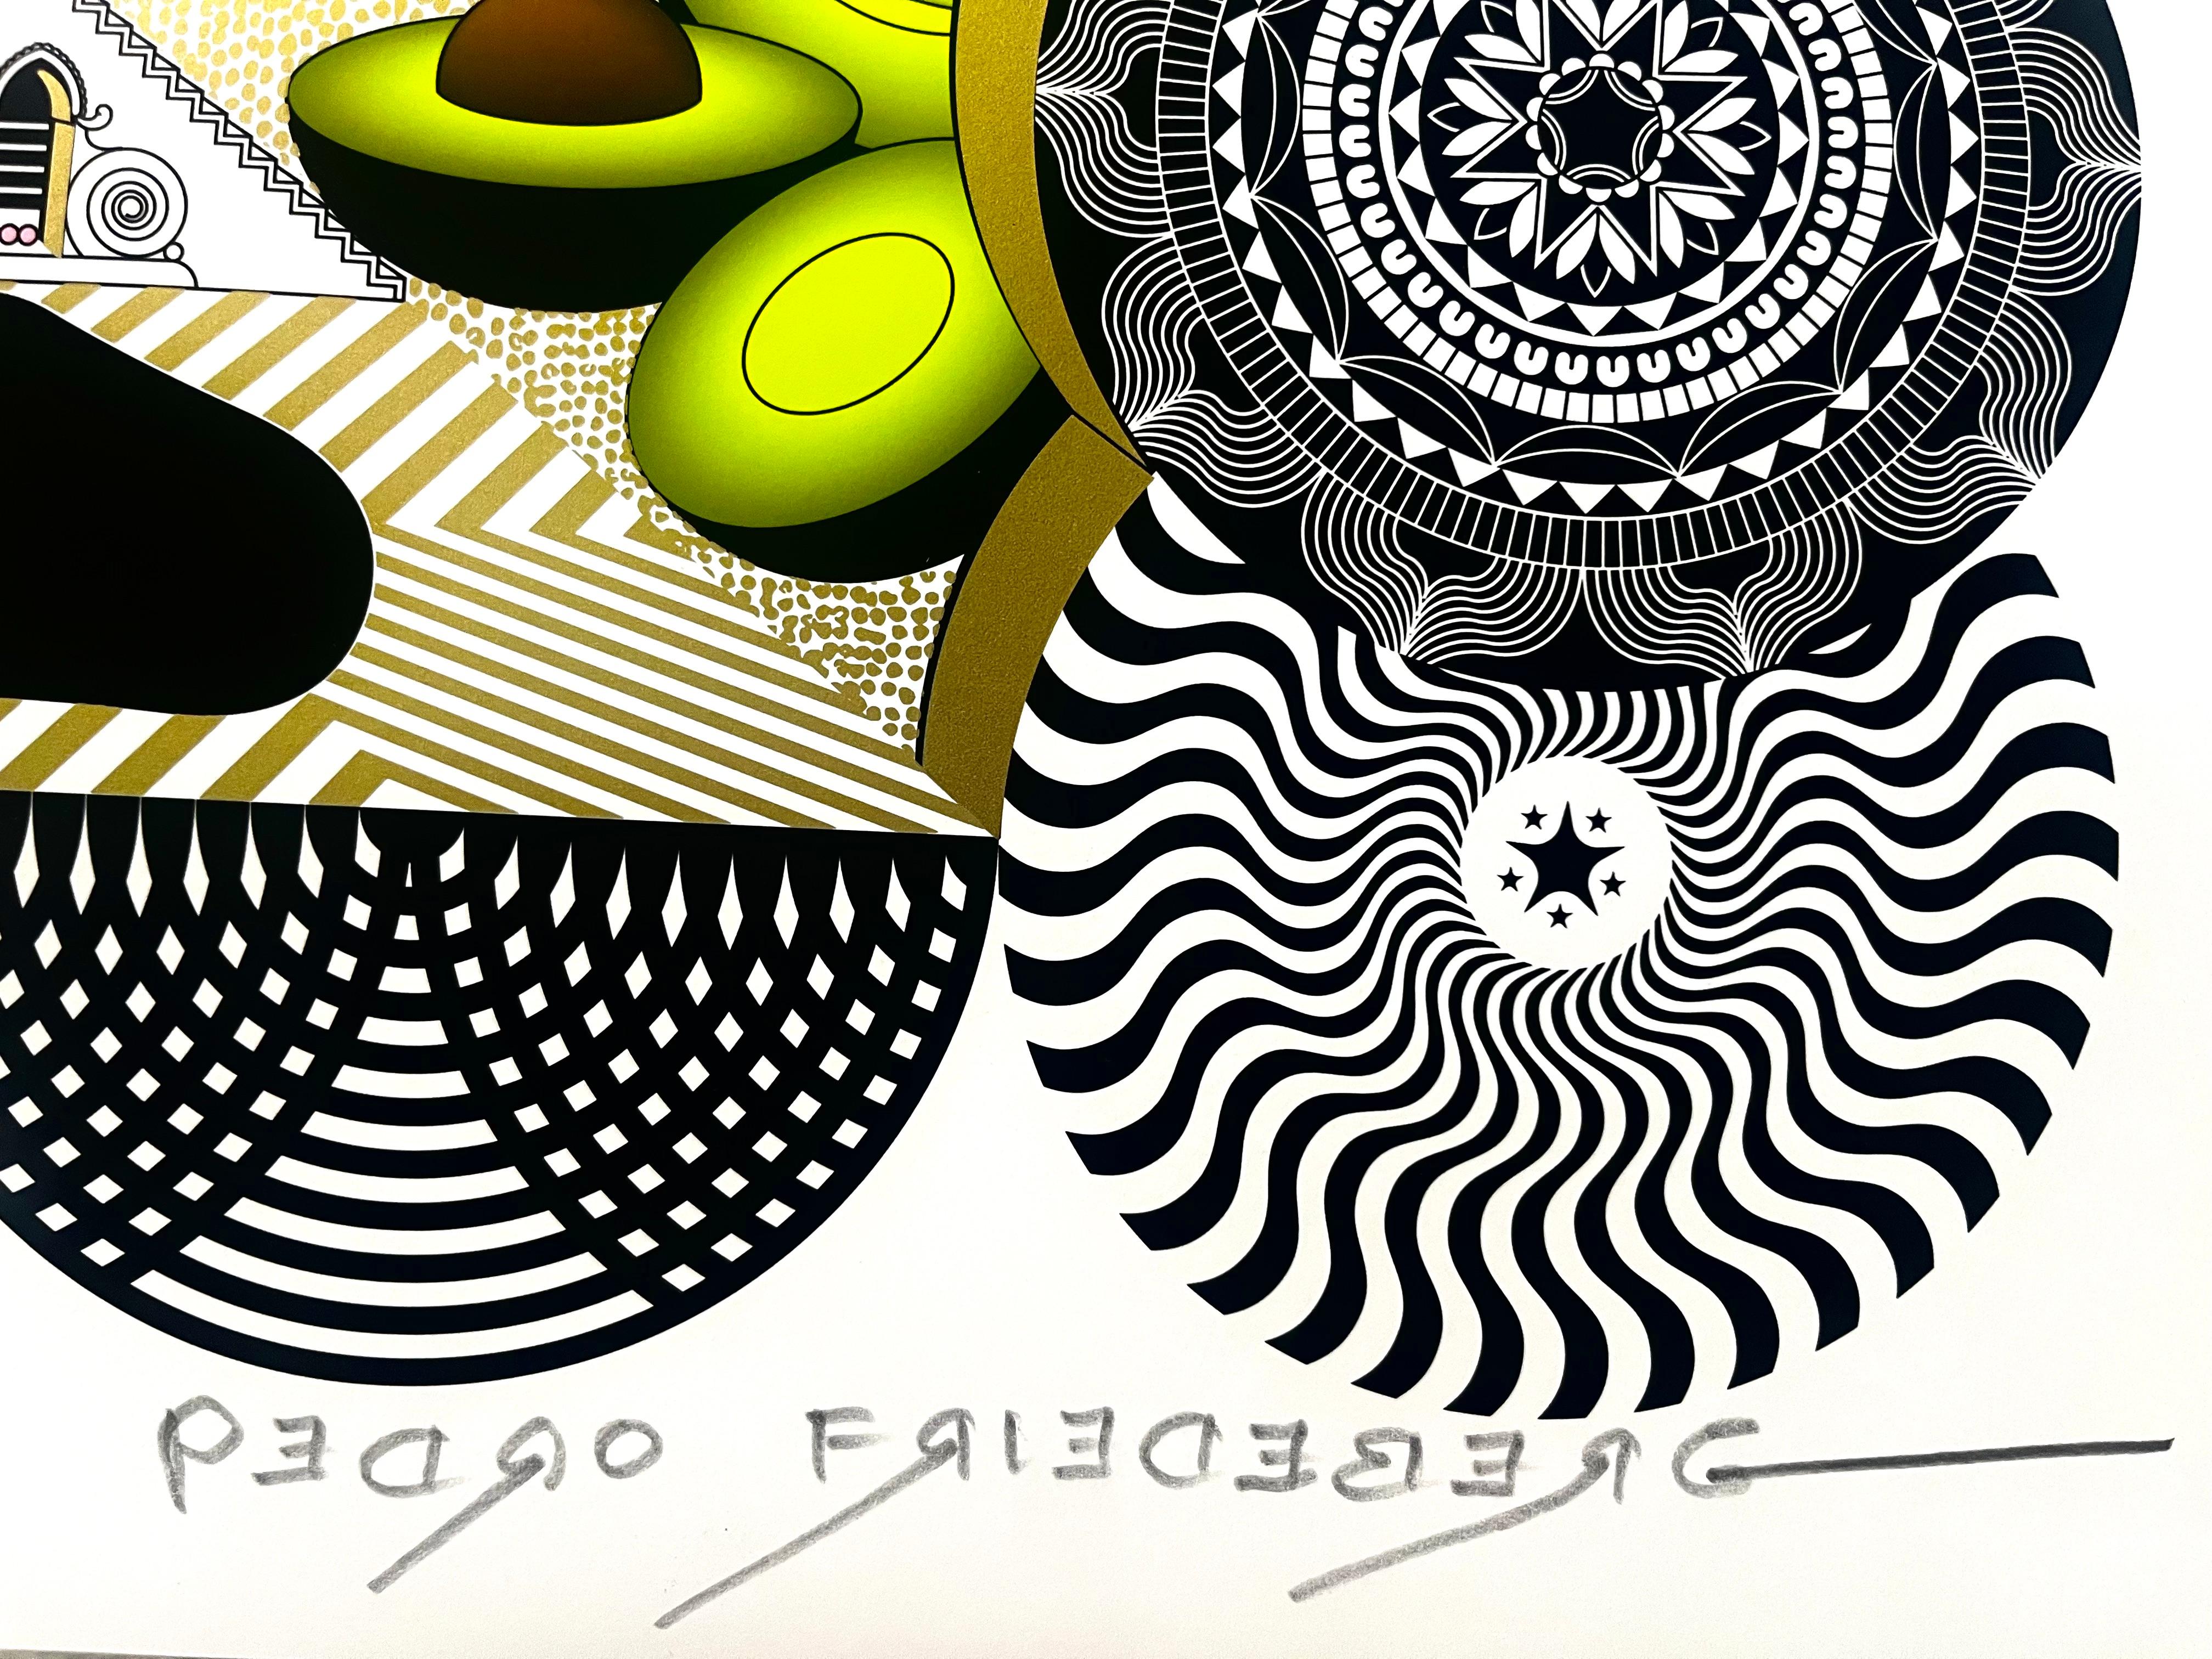 Un dimanche à Avocadoland - paysage géométrique, surréaliste, neobarroque - Print de Pedro Freideberg